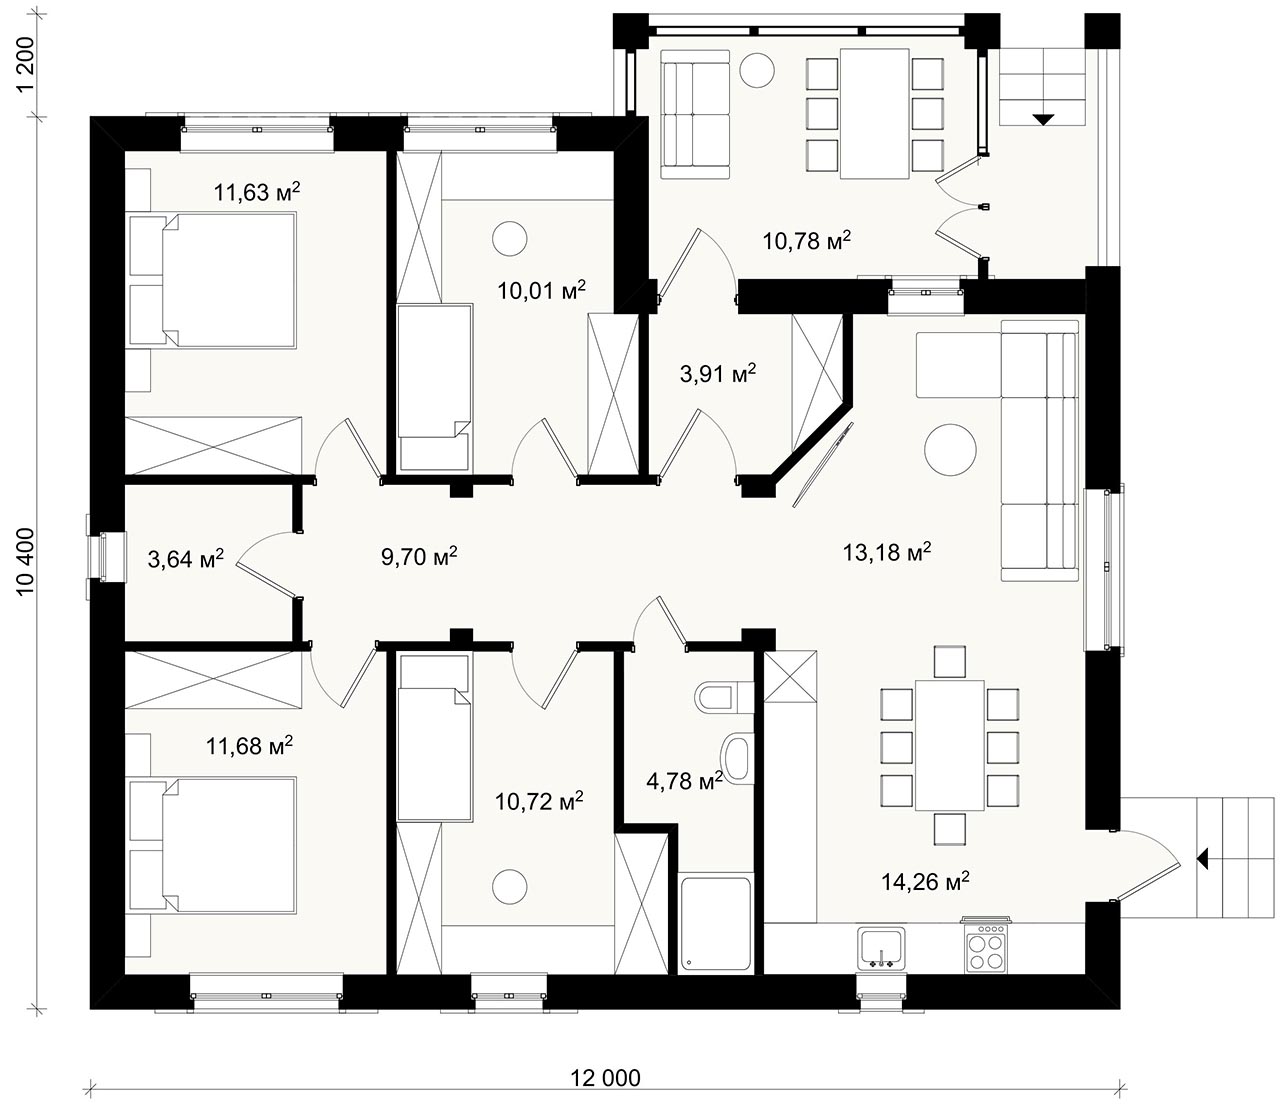 Варианты планировок одноэтажного дома КРАСНОДАР 12 на 12 метров 4 комнаты